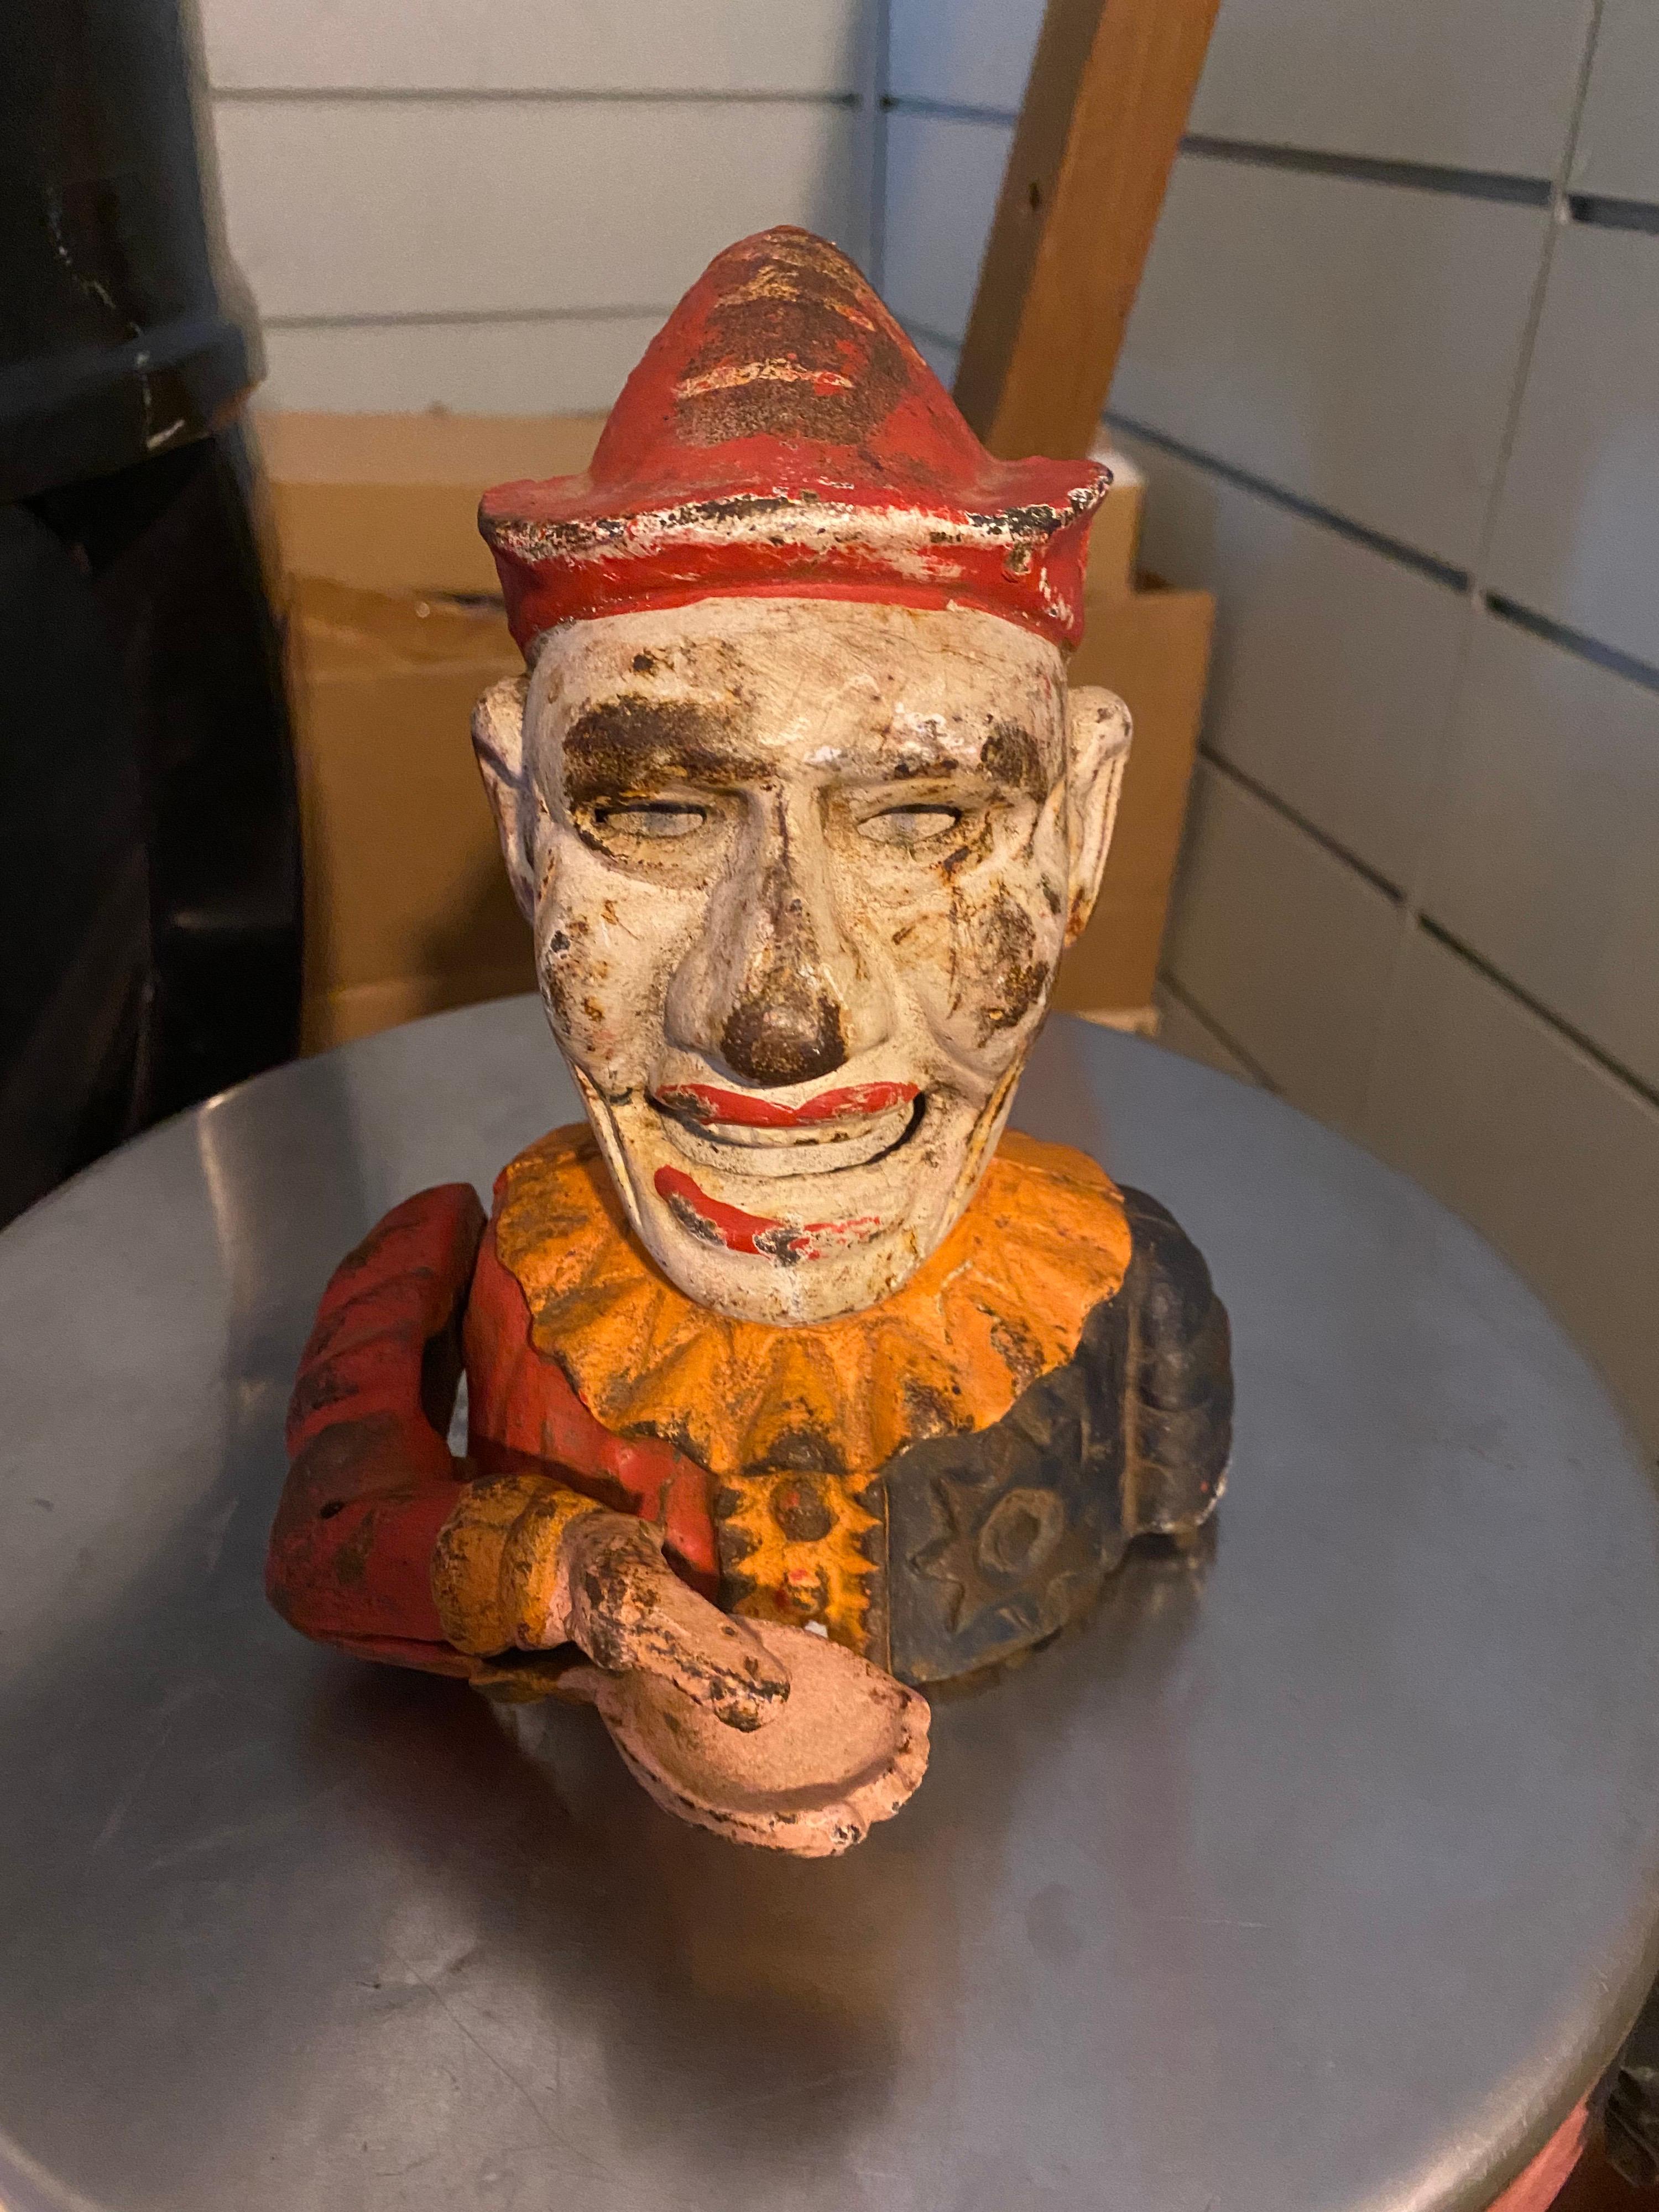 1900S Pierrot, le clown mécanique en fonte de la banque à un sou, peint à la main. Banque mécanique très colorée connue sous le nom de Humpty Dumpty Bank et représentant un clown avec sa bouche ouverte et son bras oscillant ayant une main ouverte où